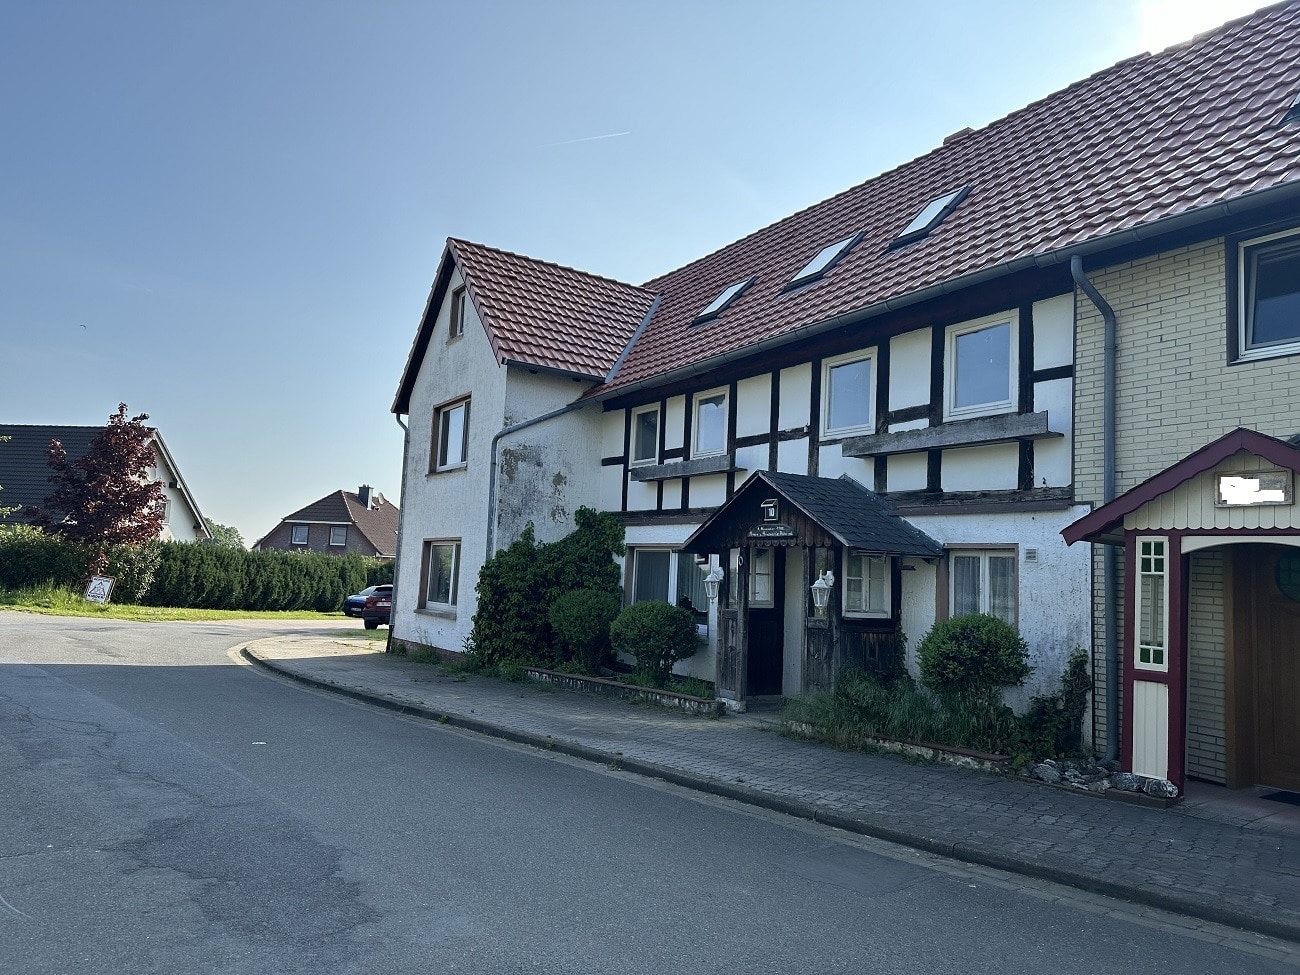 Sibbesse-Adenstedt: Großzügige Doppelhaushälfte mit Sauna, Balkon und Garage, 31079 Sibbesse, Doppelhaushälfte